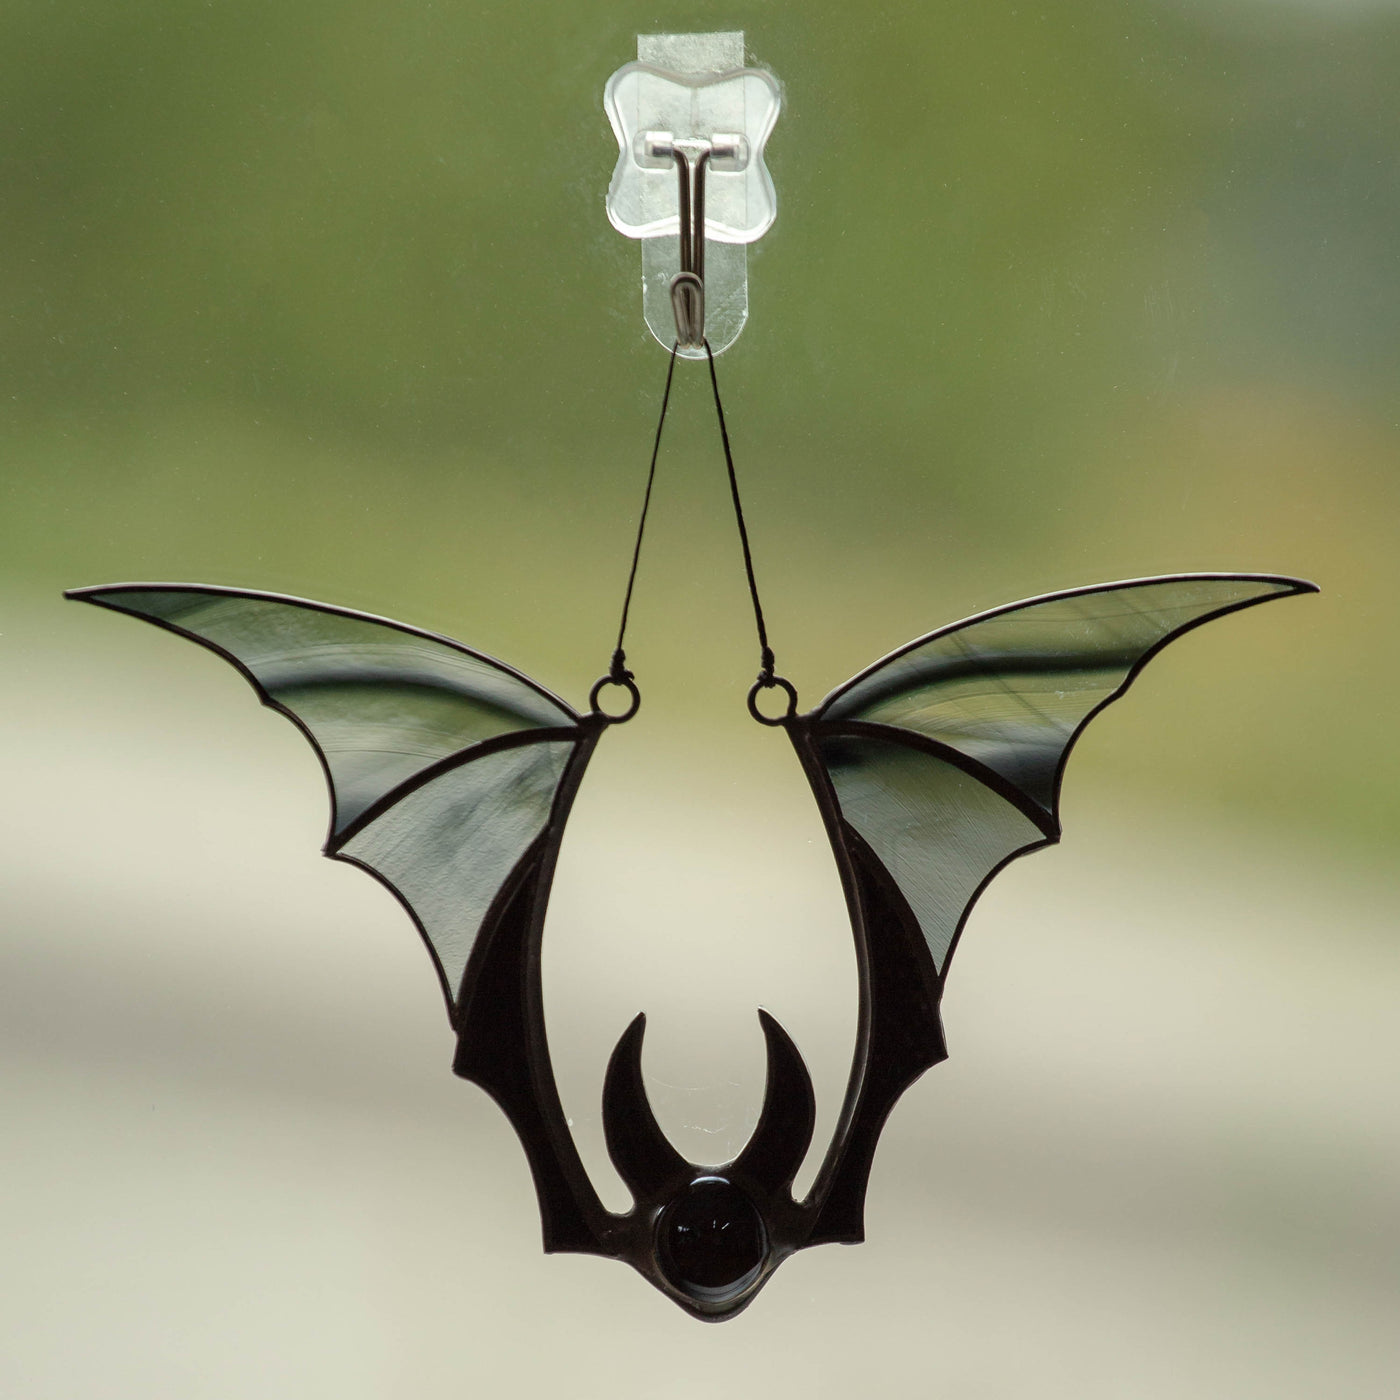 Black bat suncatcher for Halloween celebrations